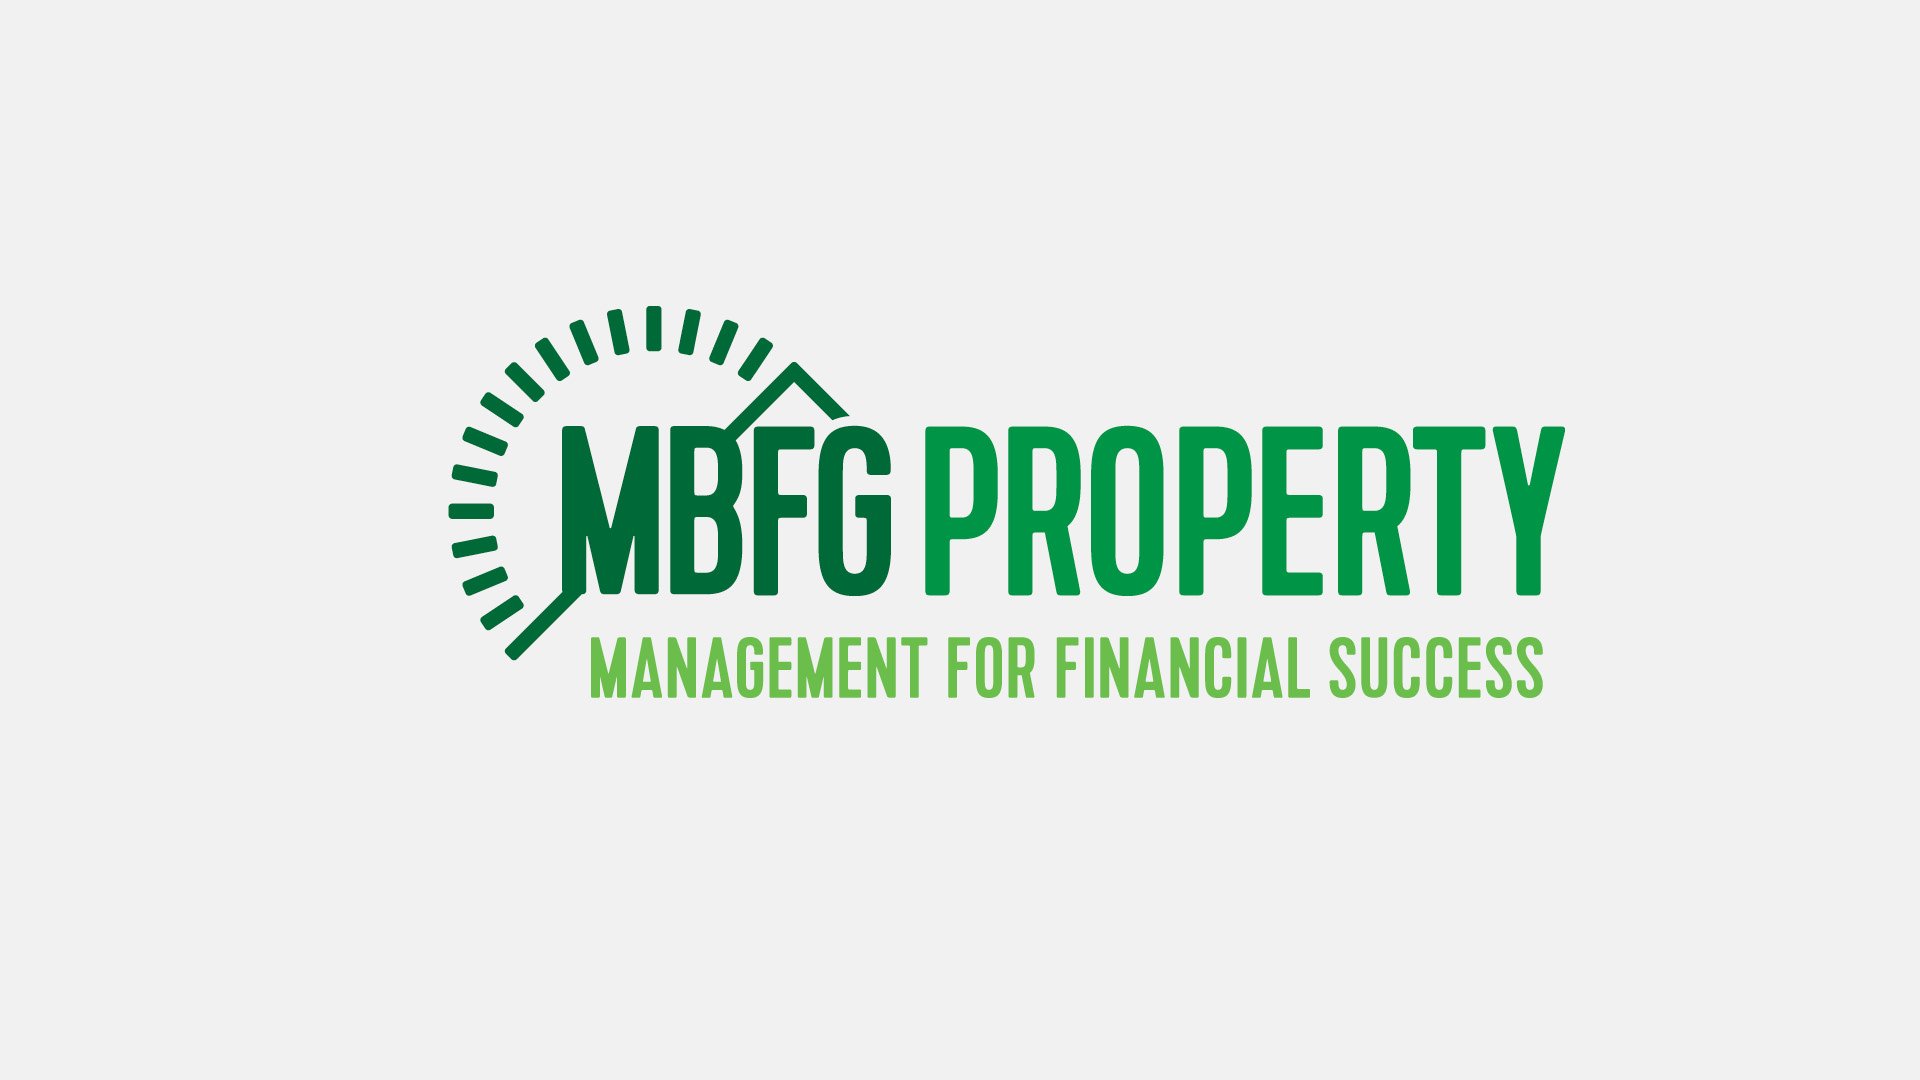 MBFG Property Case Study11.jpg